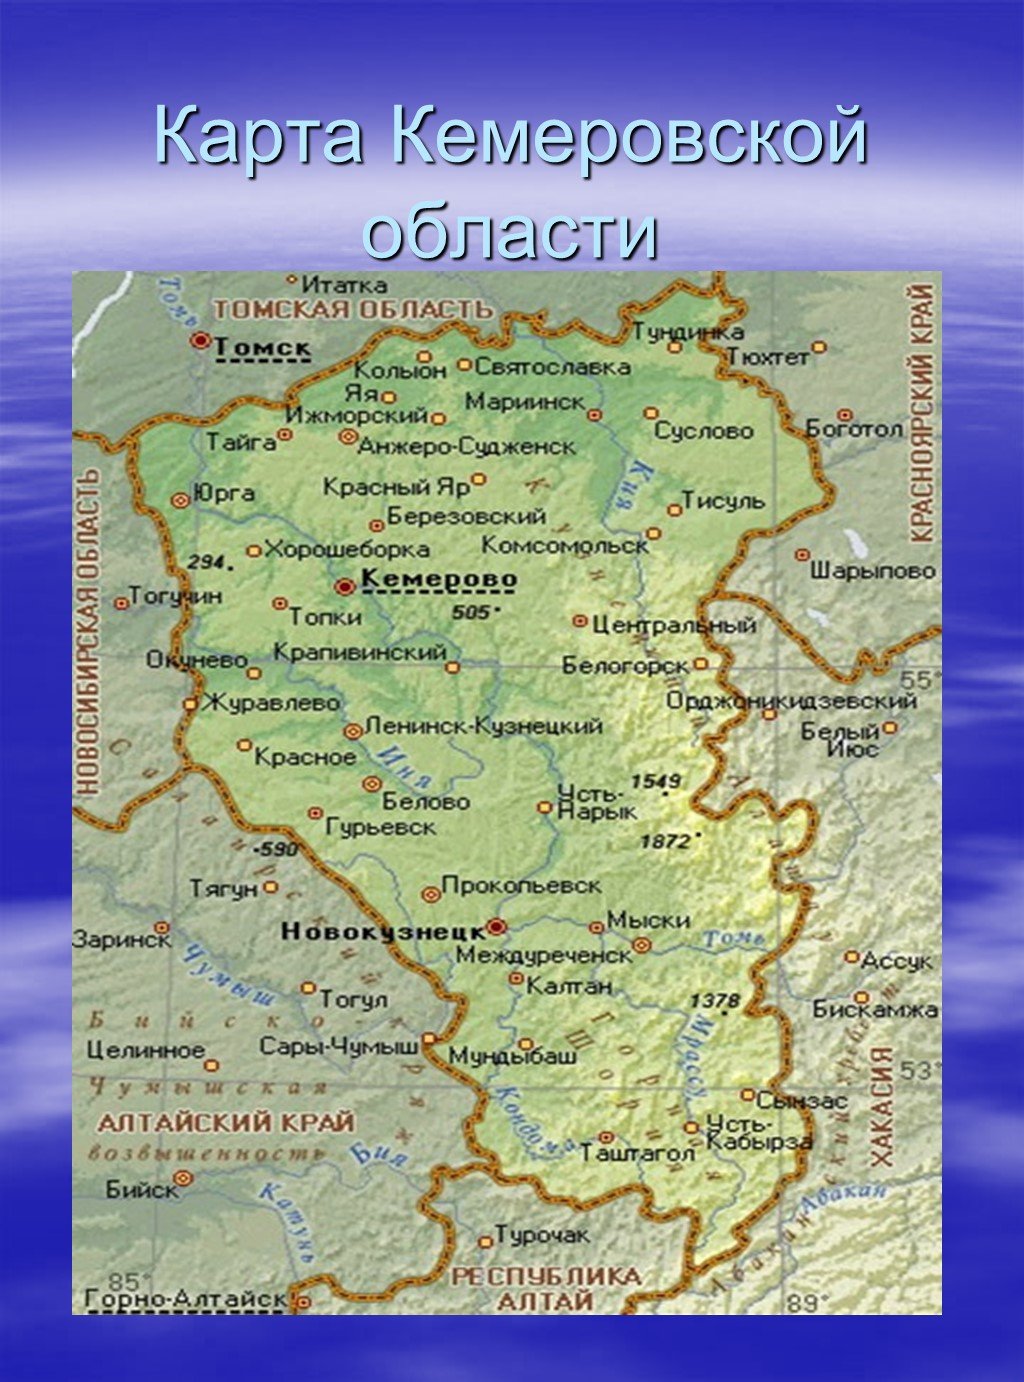 Кемеровская область находится в зоне. Карта Кемеровской области. Географическая карта Кемеровской области. Карта Кемеровской области с городами. Карта области Кемеровской области.